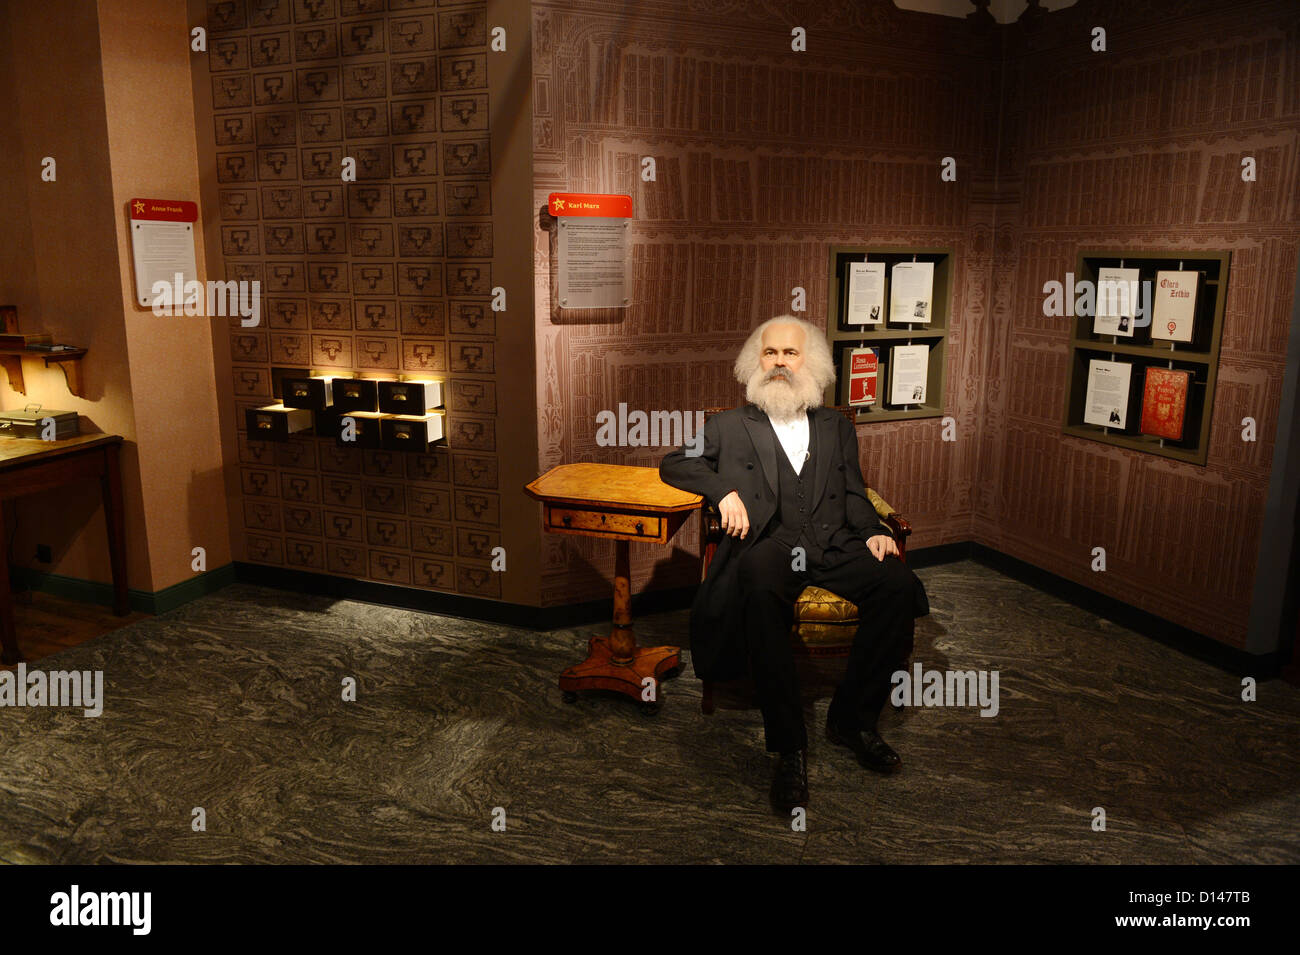 La cire figure illustrant l'économiste allemand Karl Marx socialiste et révolutionnaire est représenté au musée de cire Madame Tussauds à Berlin, Allemagne, 04 décembre 2012. Photo : Jens Kalaene Banque D'Images